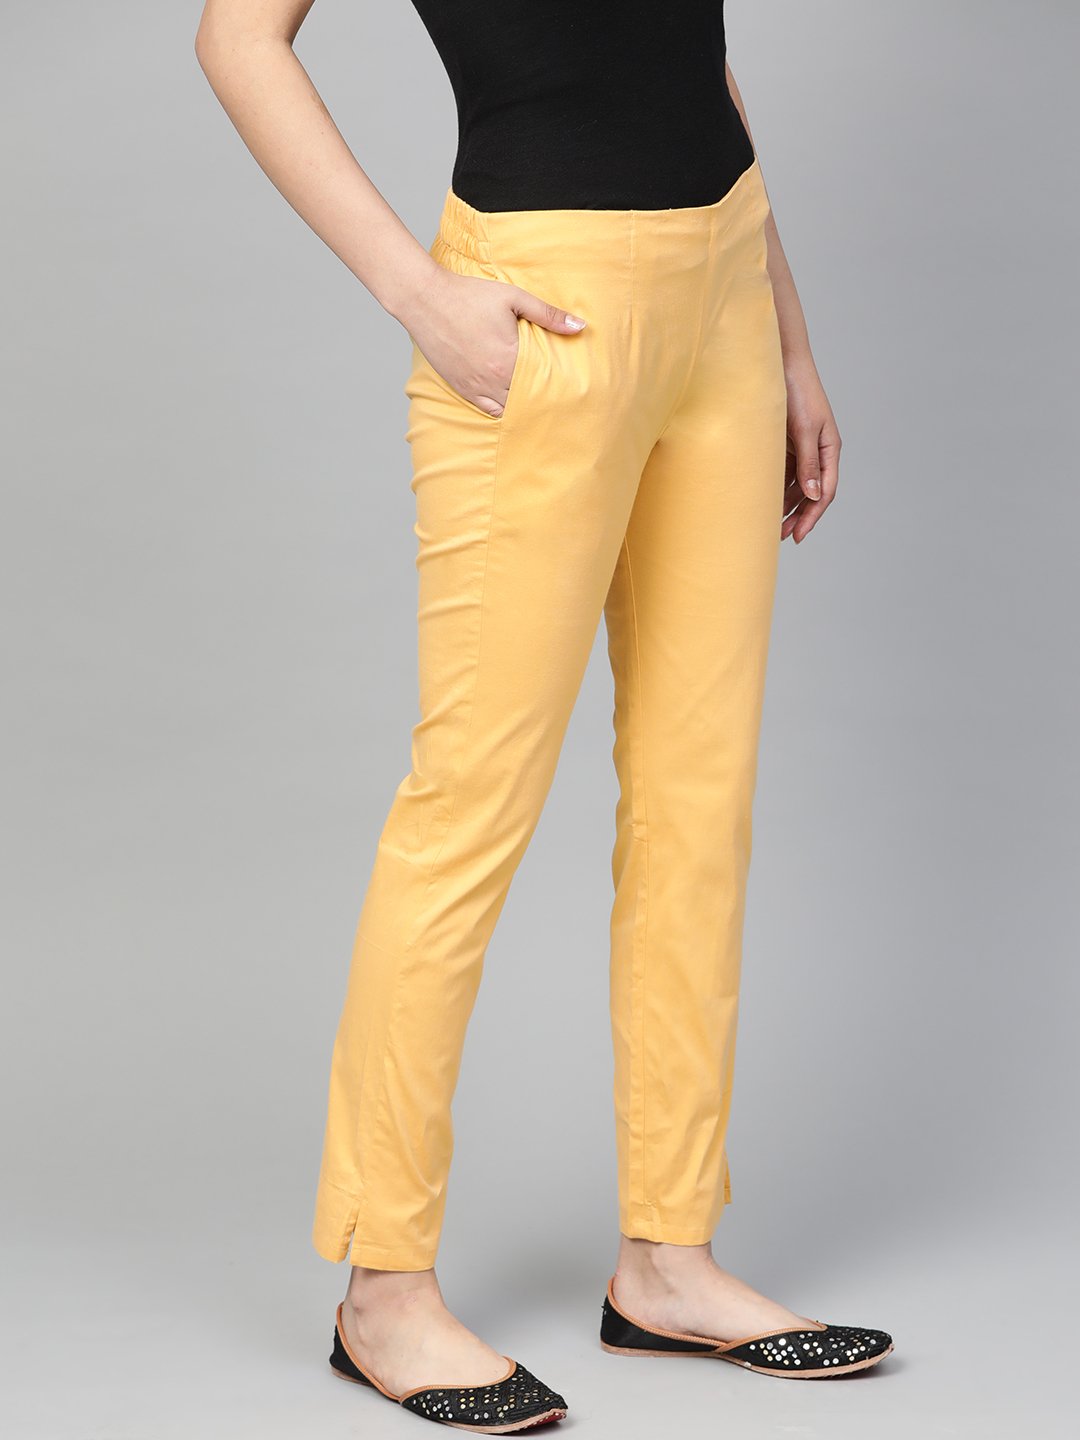 Jompers Women Beige Smart Slim Fit Solid Regular Trousers - Distacart